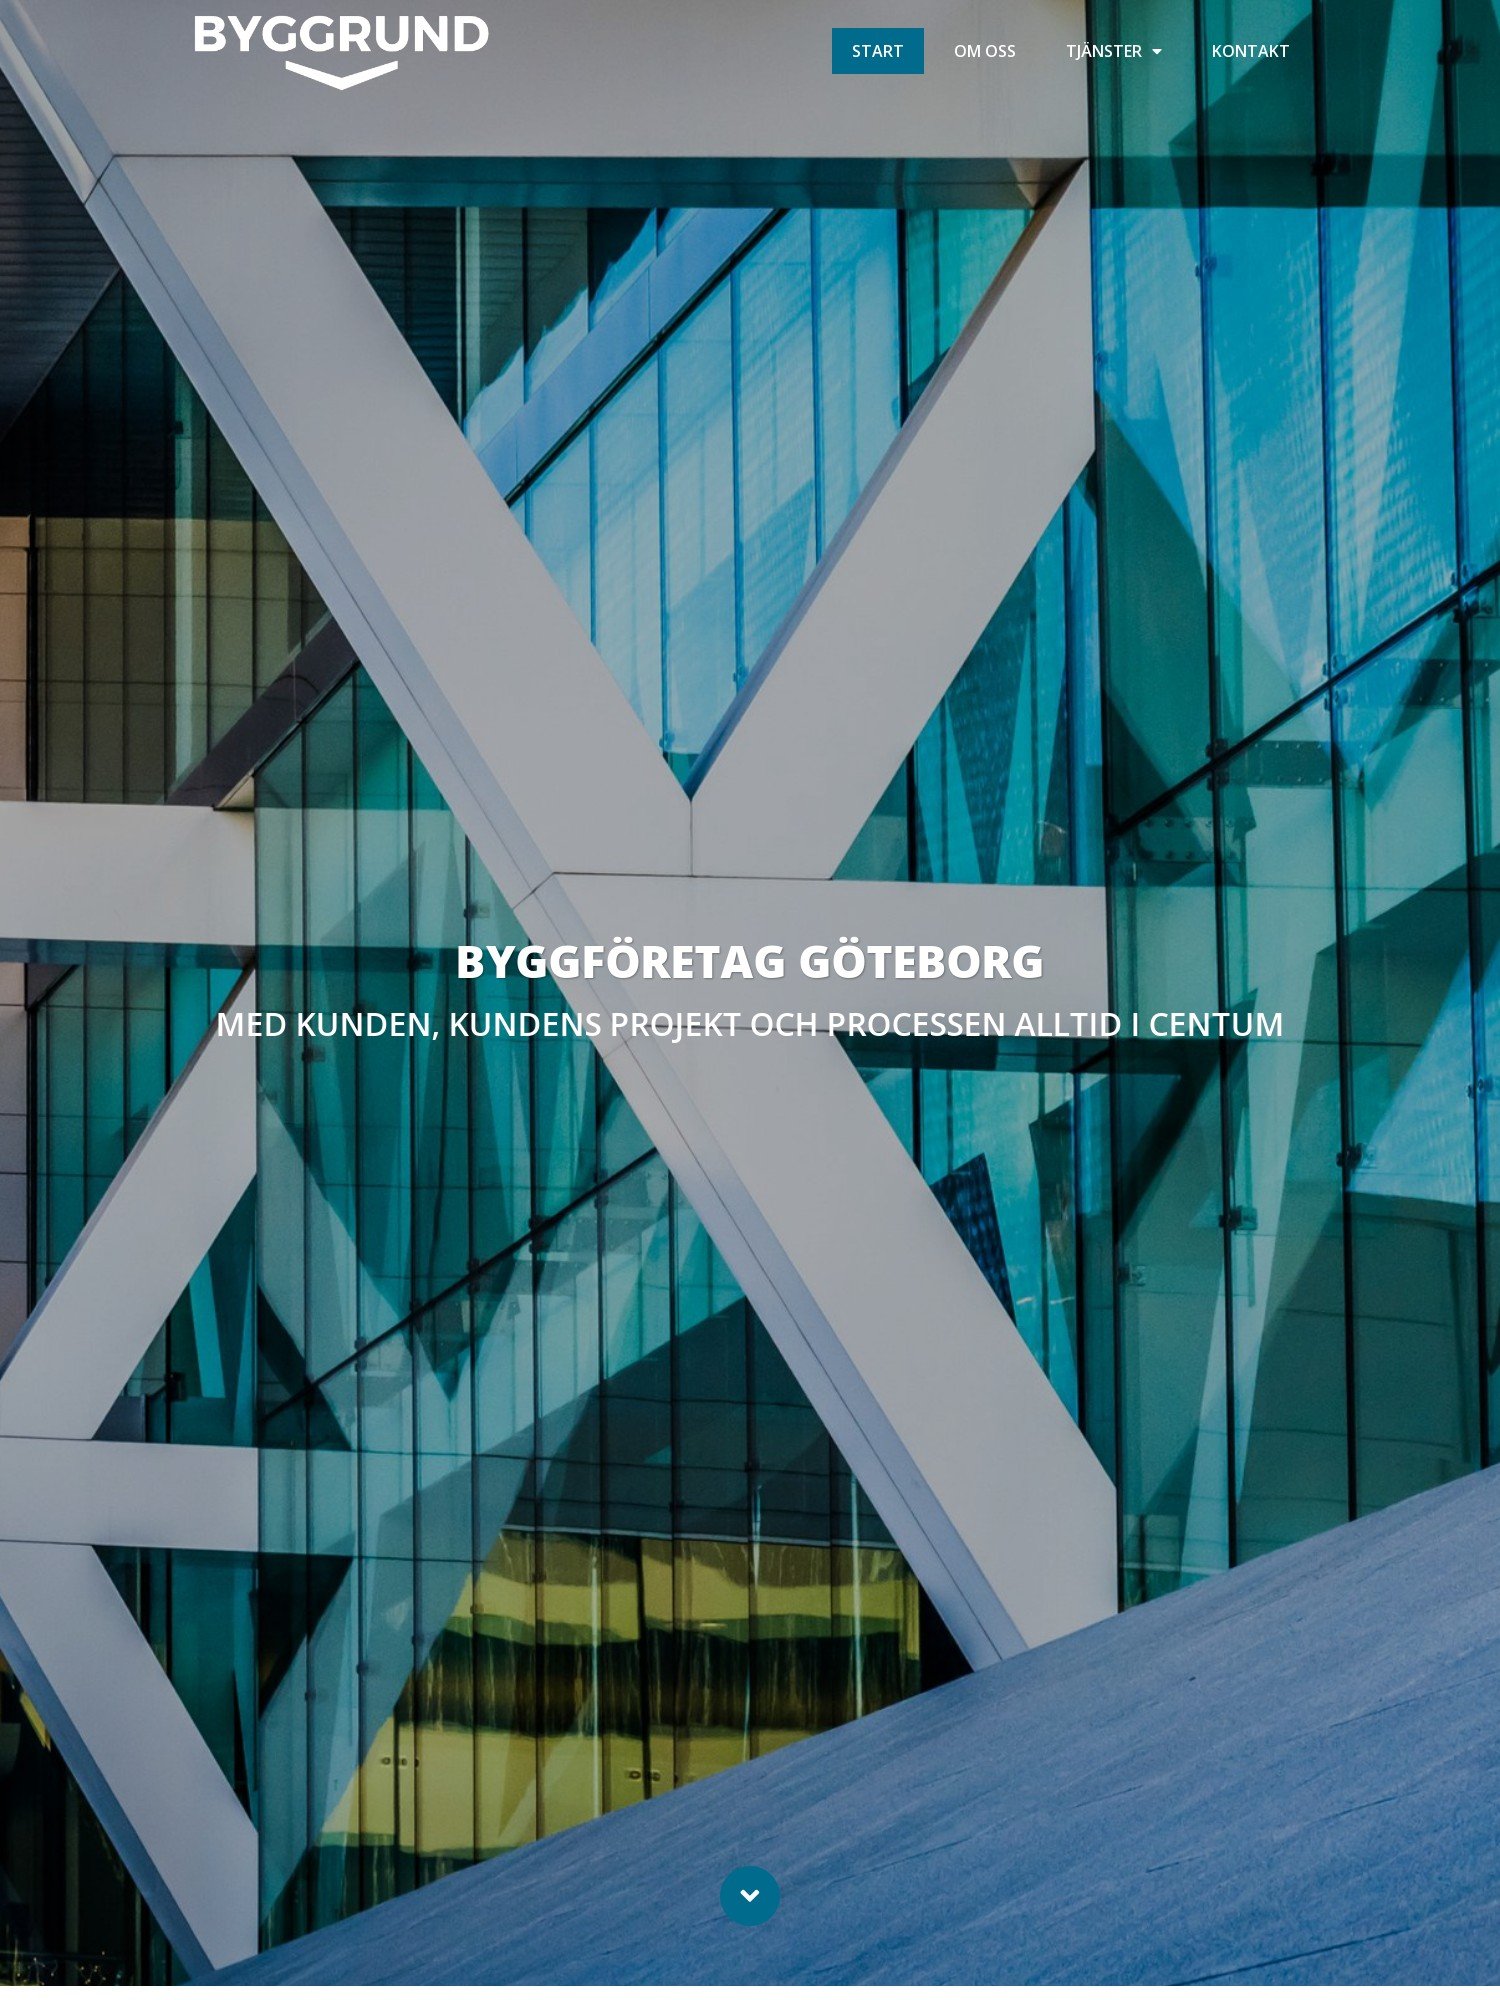 Byggrund – Byggföretaget i Göteborg